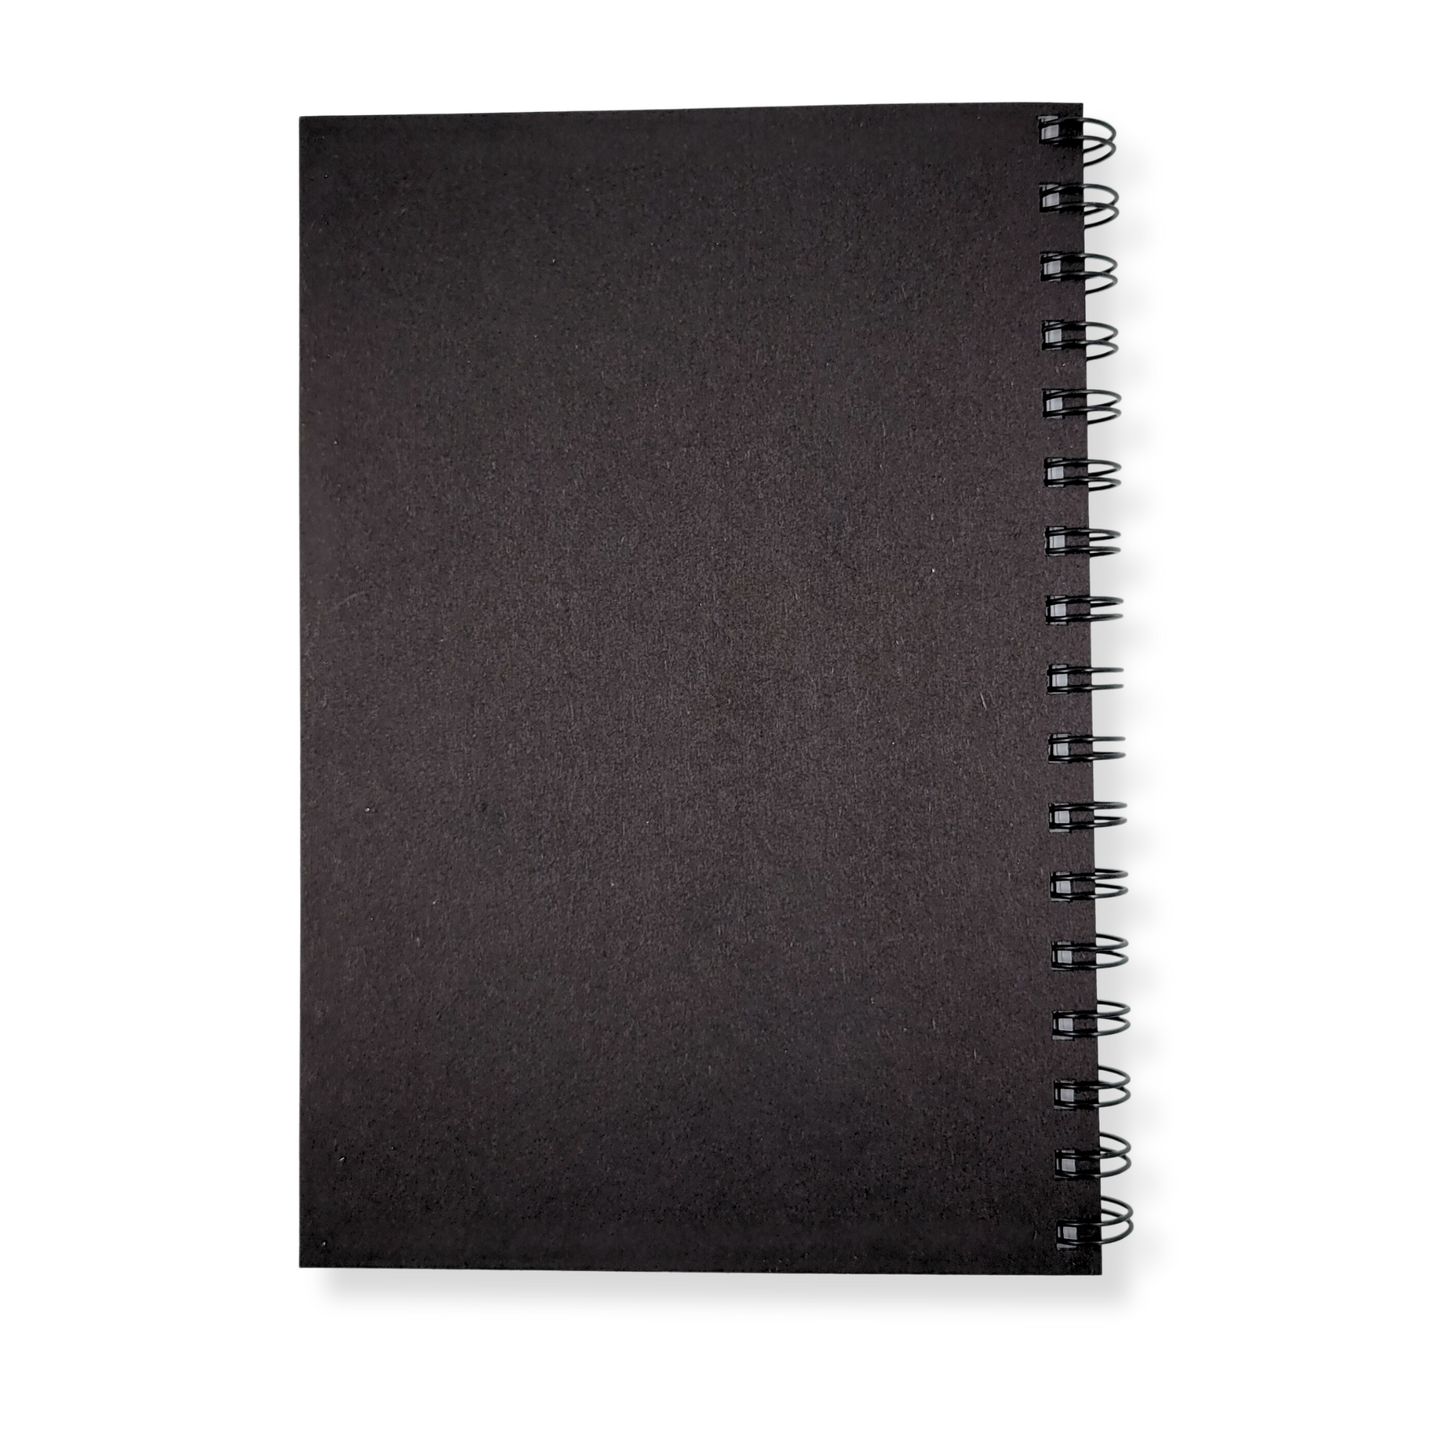 Zen Spirals Wood Journal - Stationery, Journals, Notebook: Blank Paper